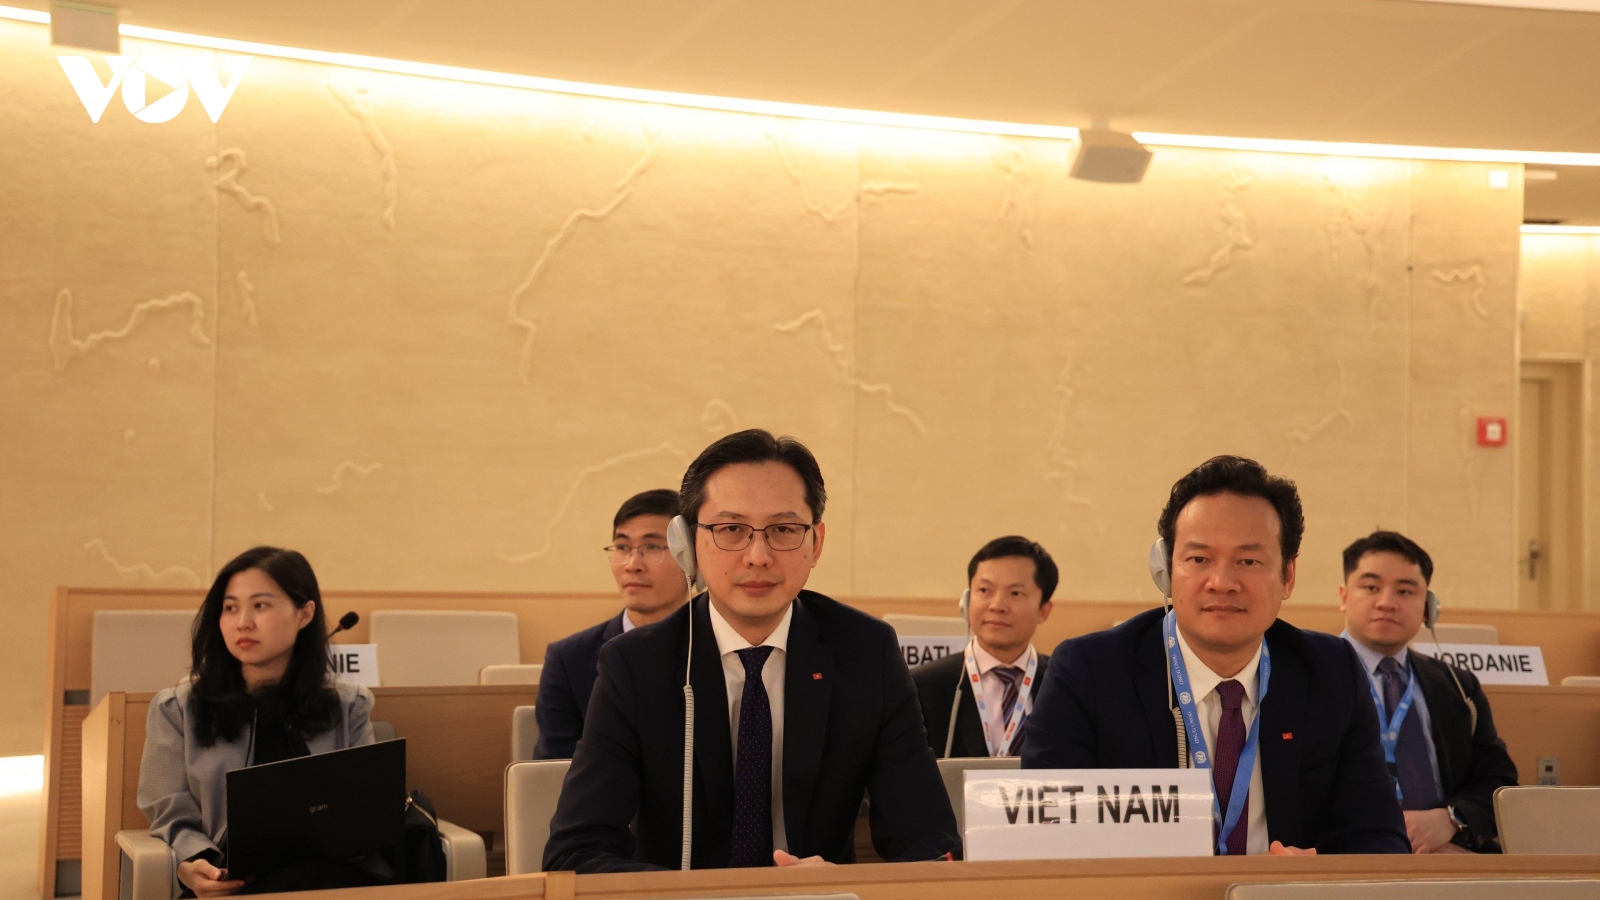 Thứ trưởng Đỗ Hùng Việt: Nổ lực thúc đẩy và bảo vệ quyền con người của Việt Nam